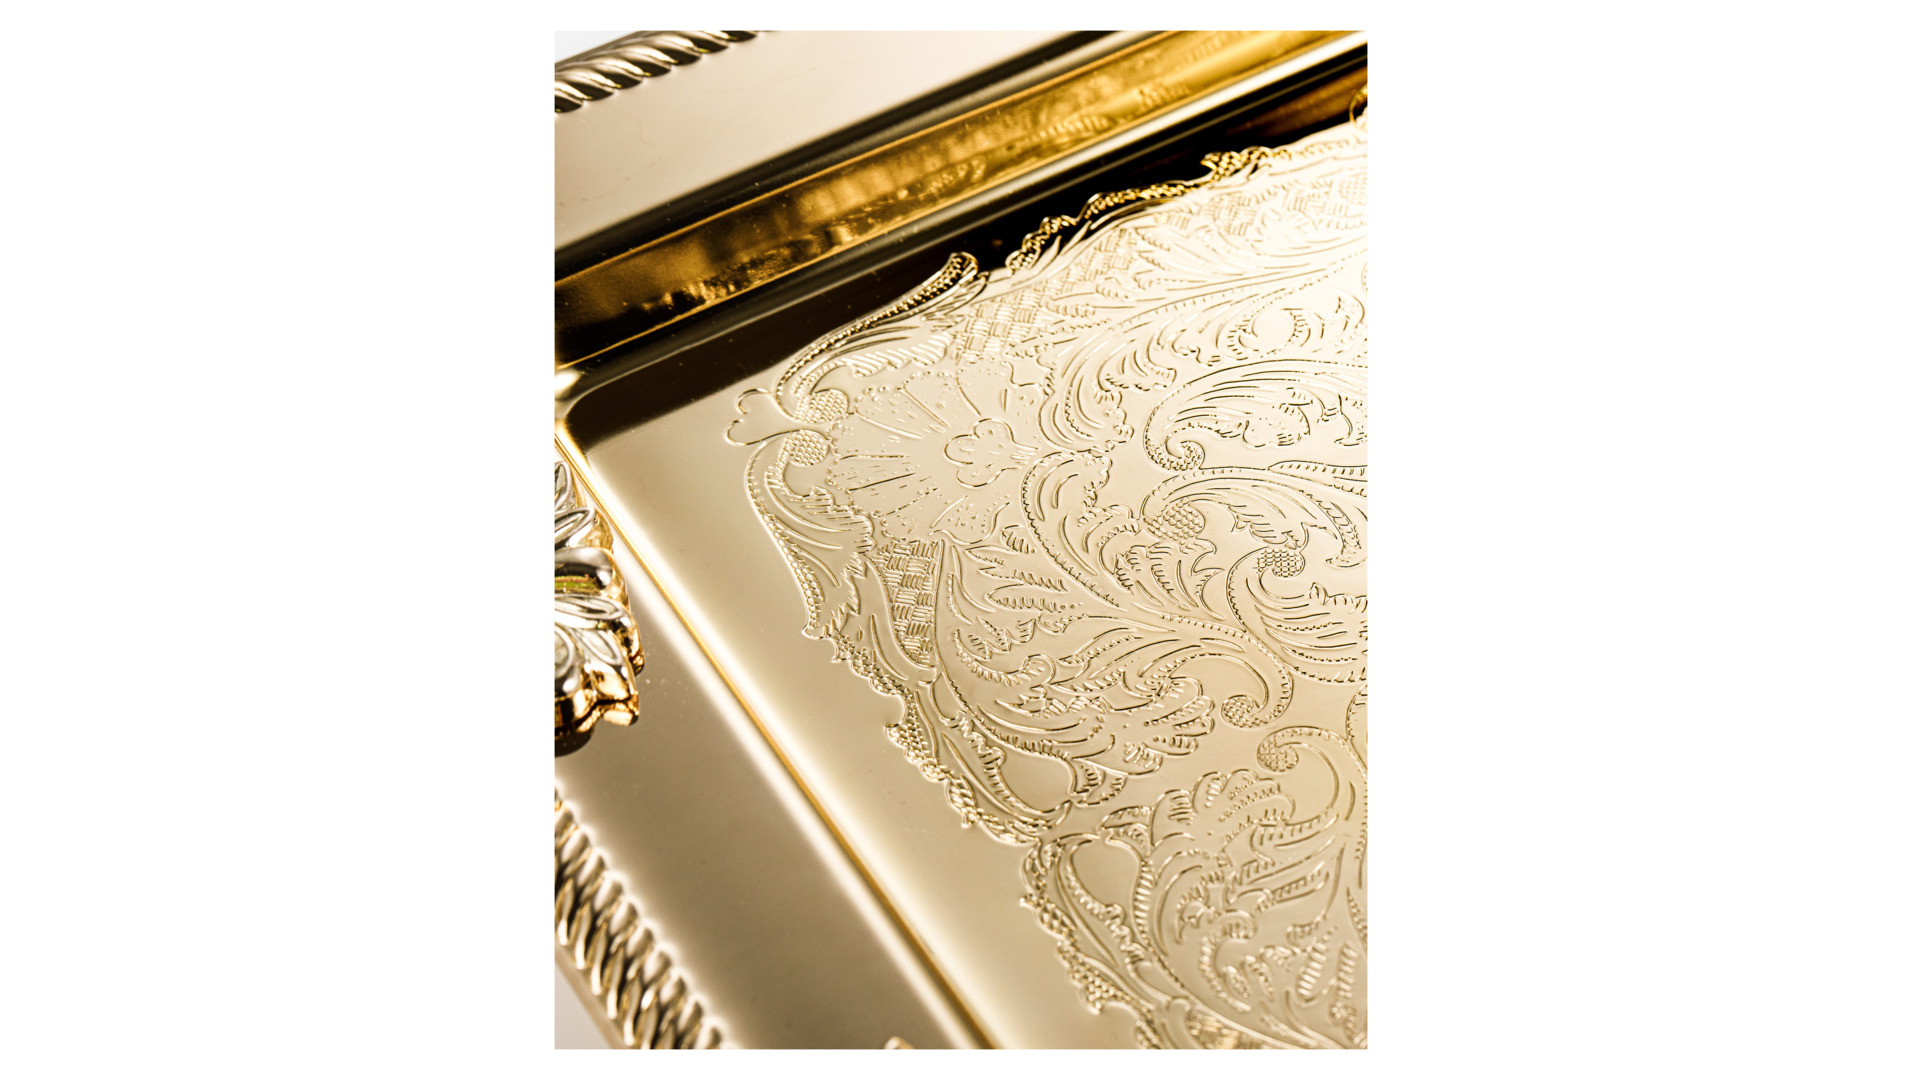 Поднос прямоугольный с ручками Queen Anne 40х25см, золотой, сталь нержавеющая